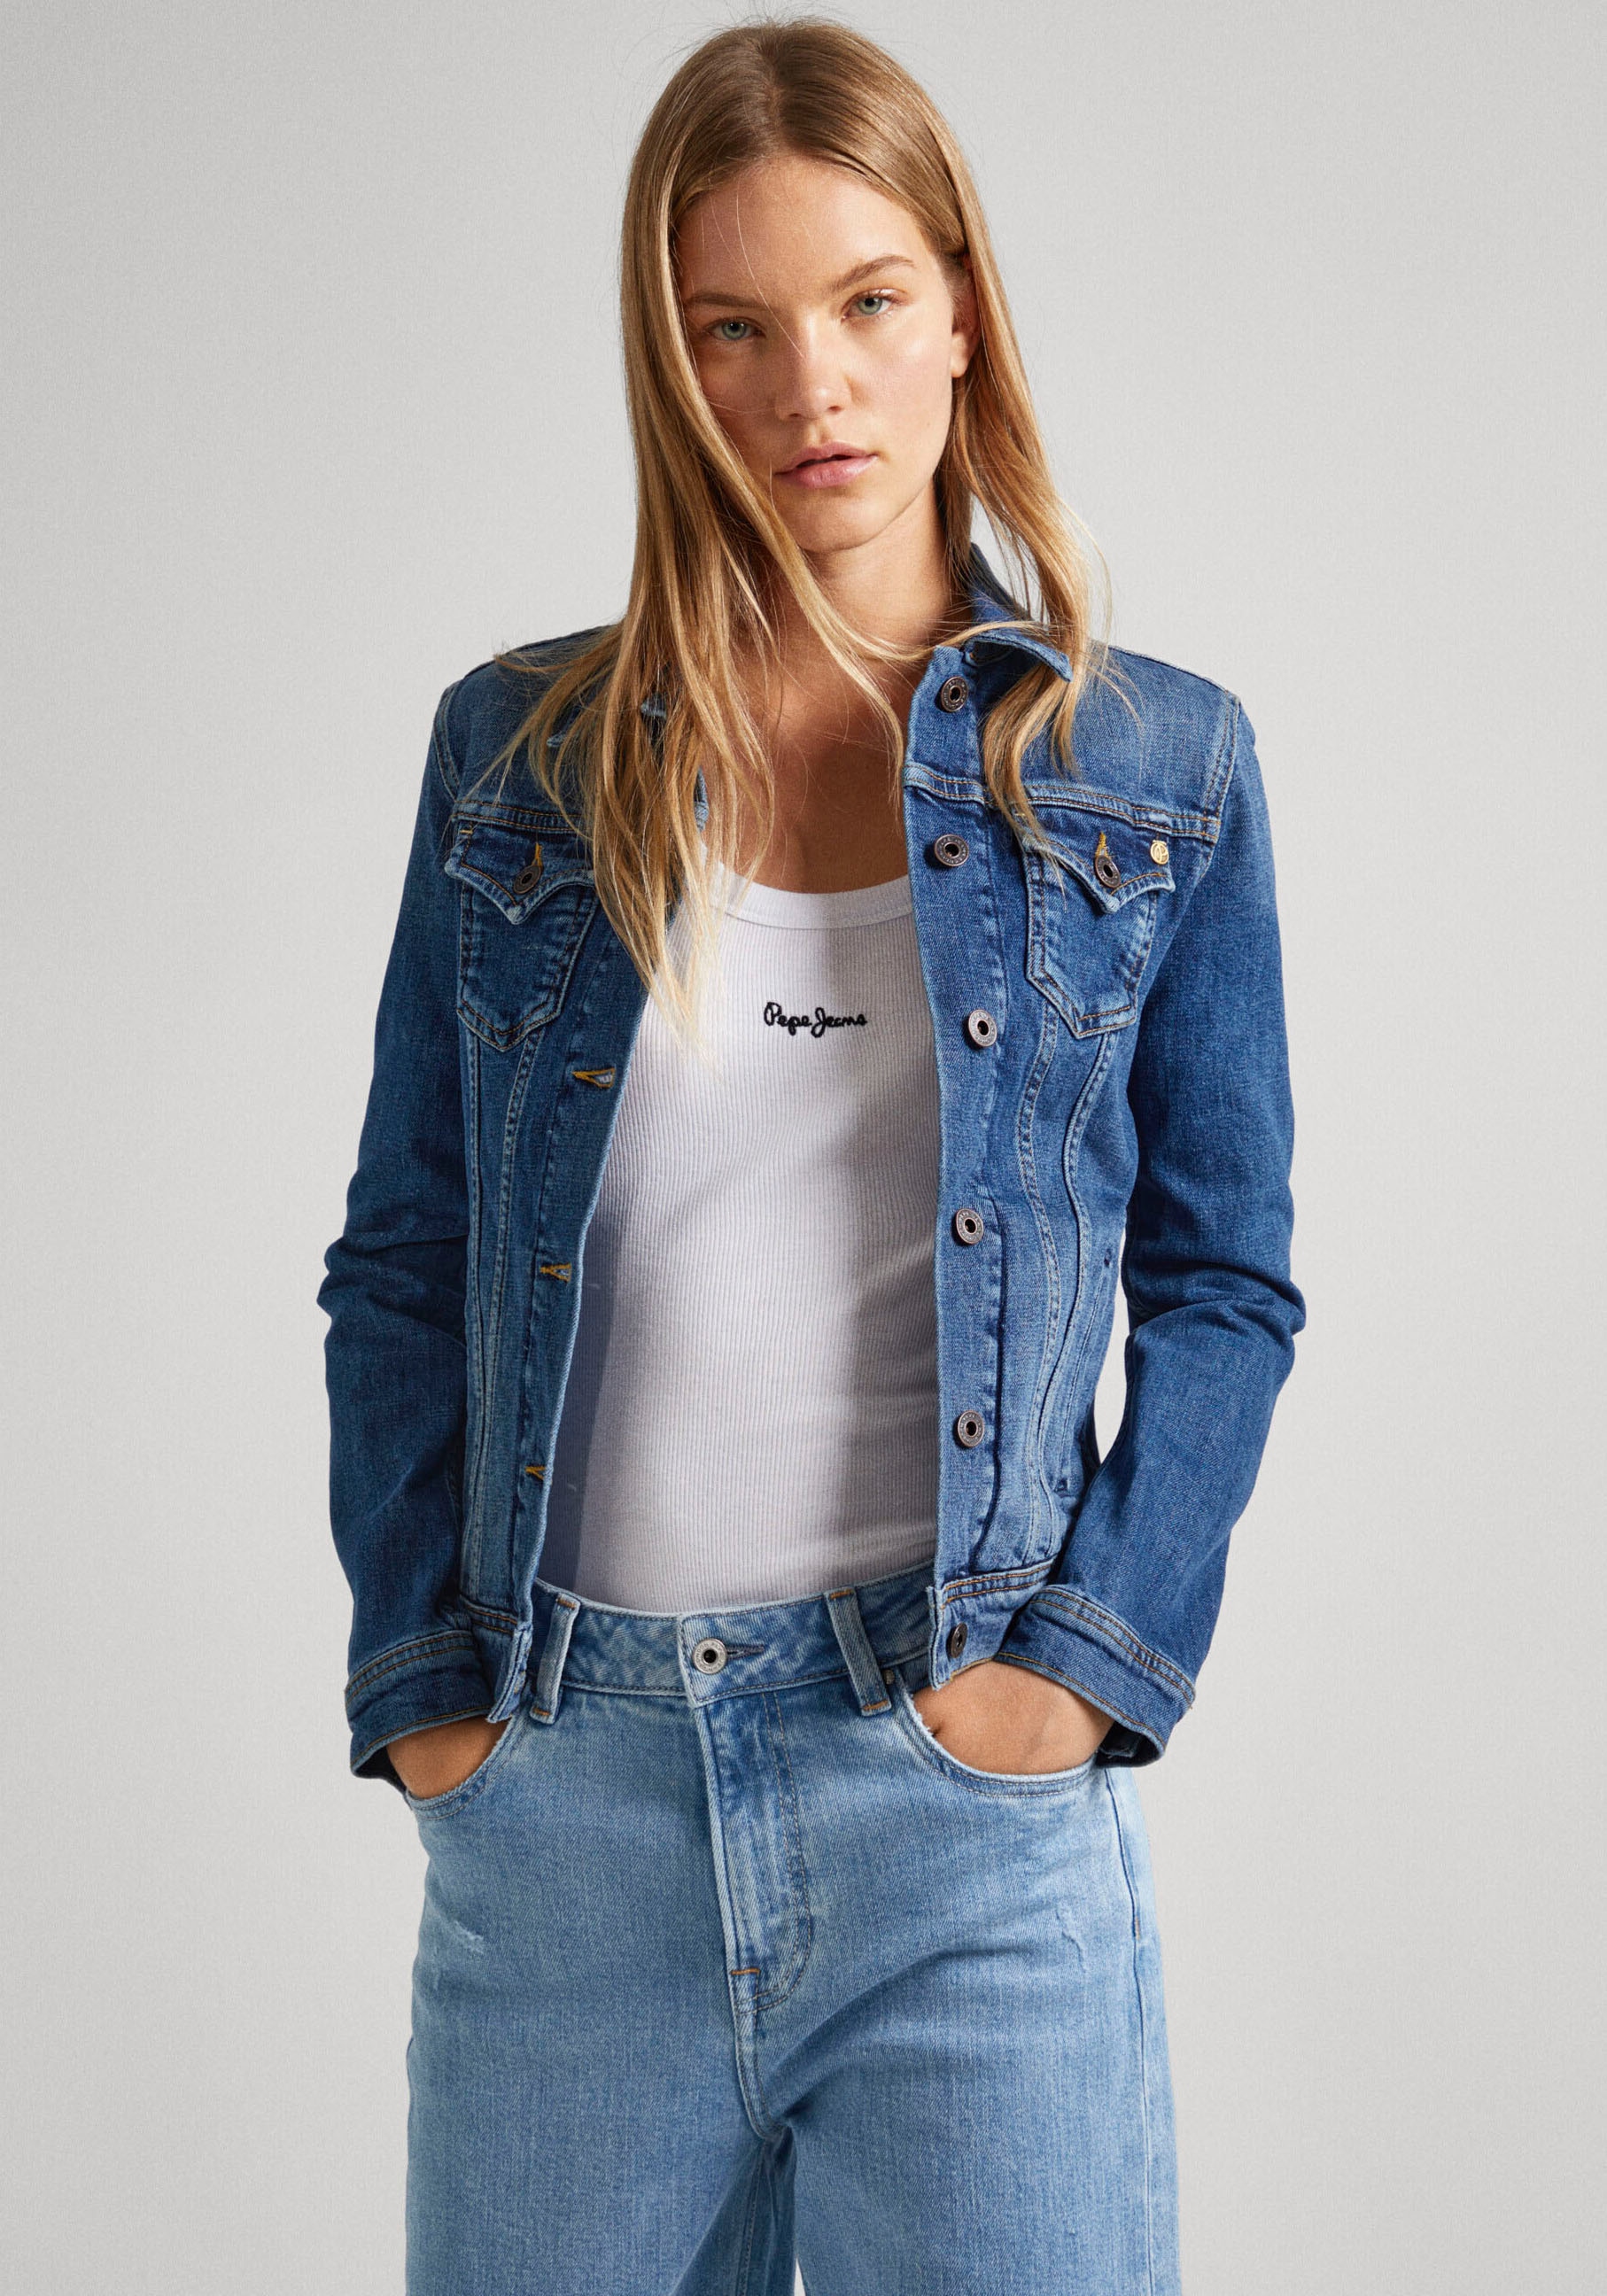 kaufen »THRIFT«, mit Knopfleiste aufgesetzten Jeans Pepe Jeansjacke und Brusttaschen durchgehender online